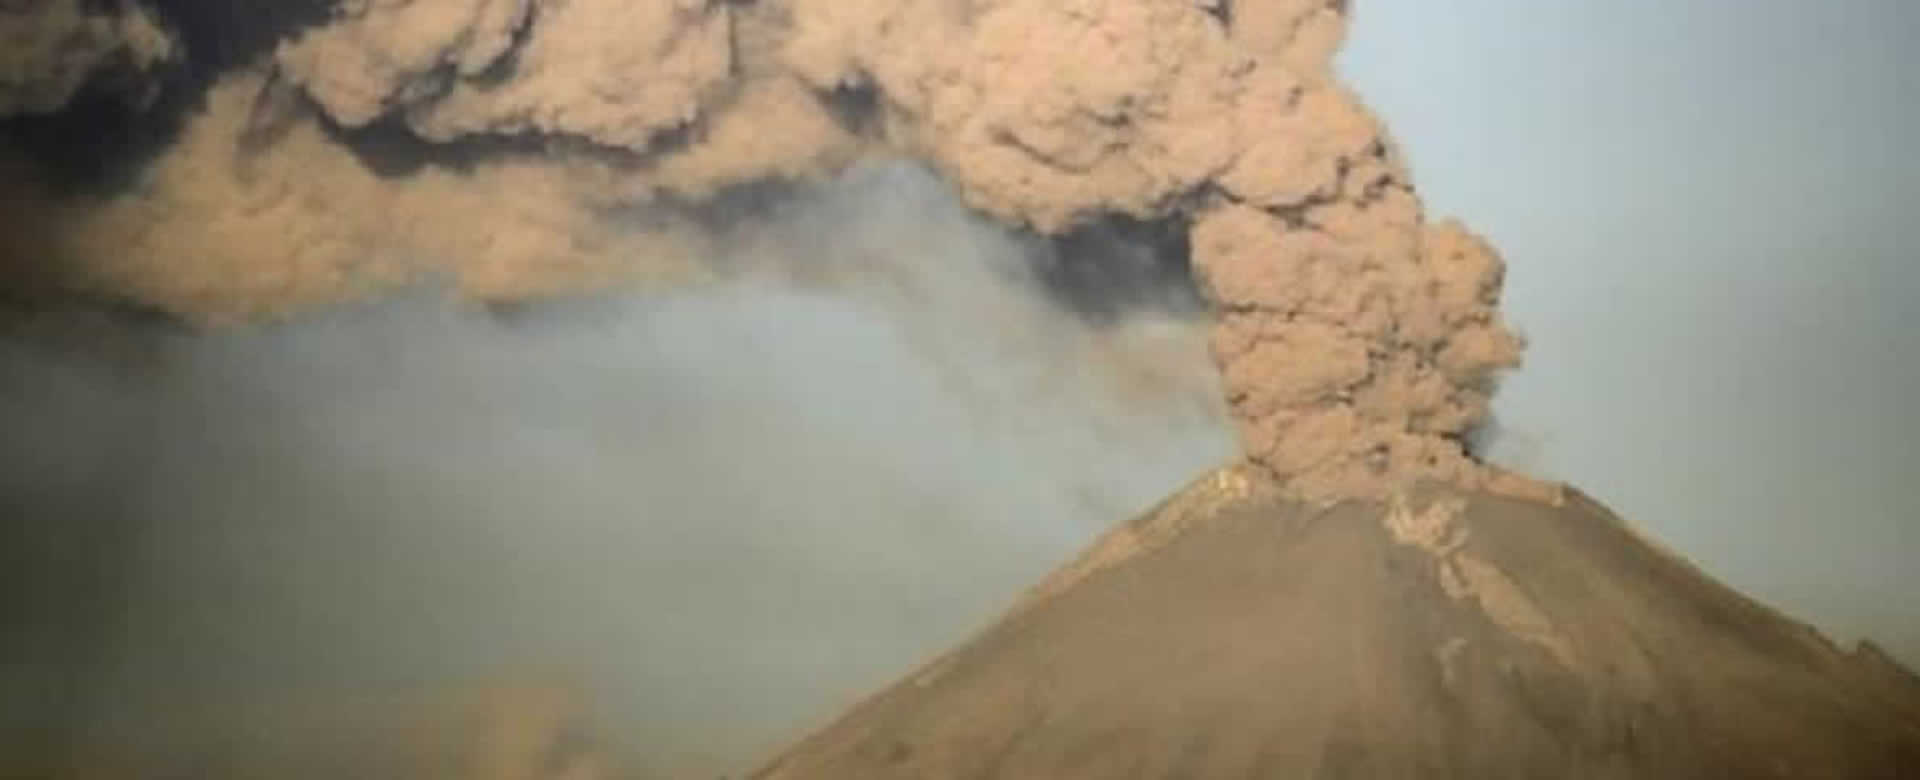 Volcán Ubinas de Perú alerta a las autoridades tras fuertes explosiones